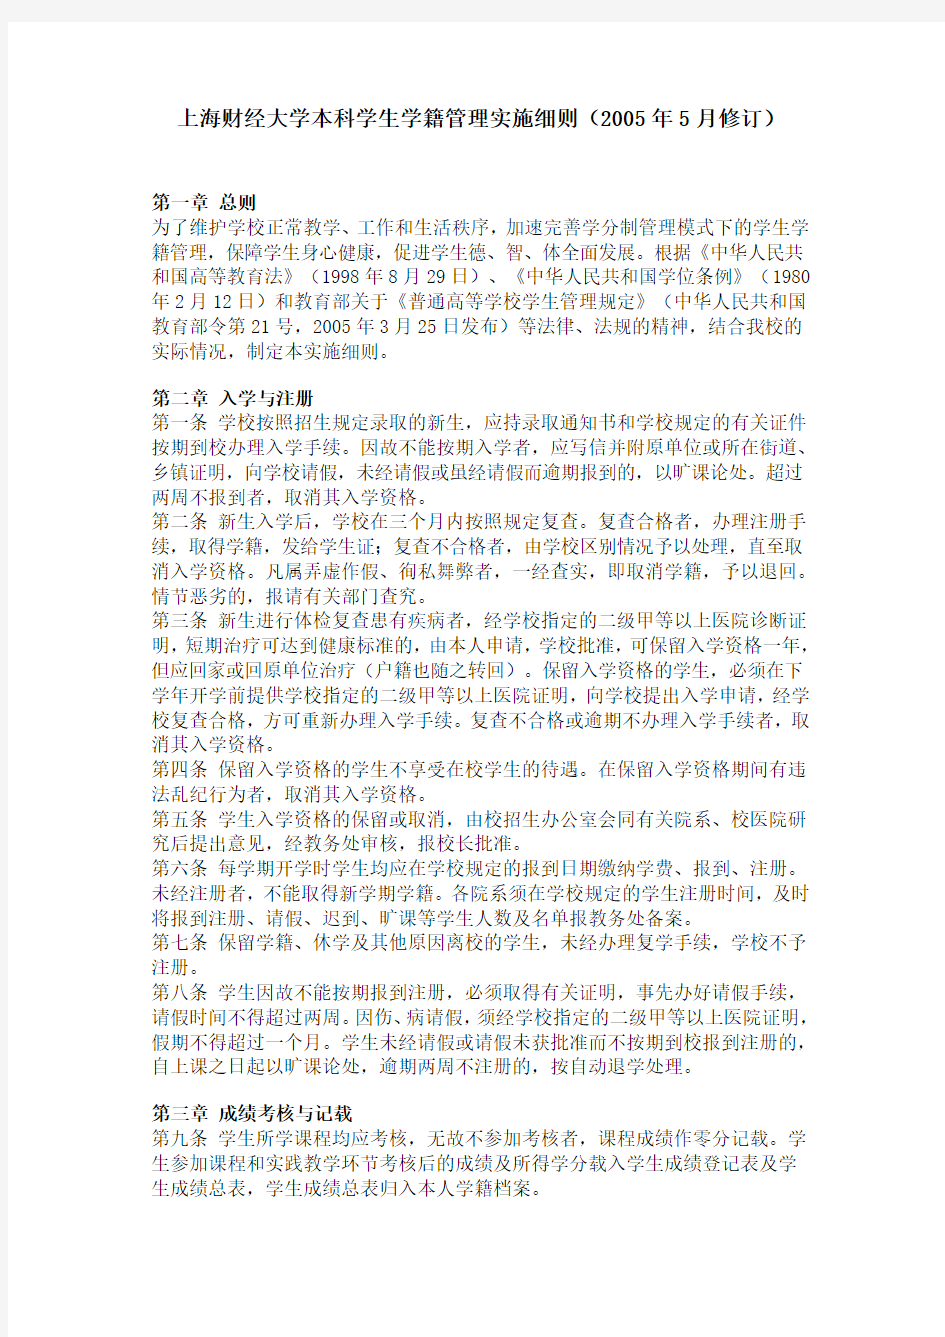 上海财经大学本科学生学籍管理实施细则(2005年5月修订)